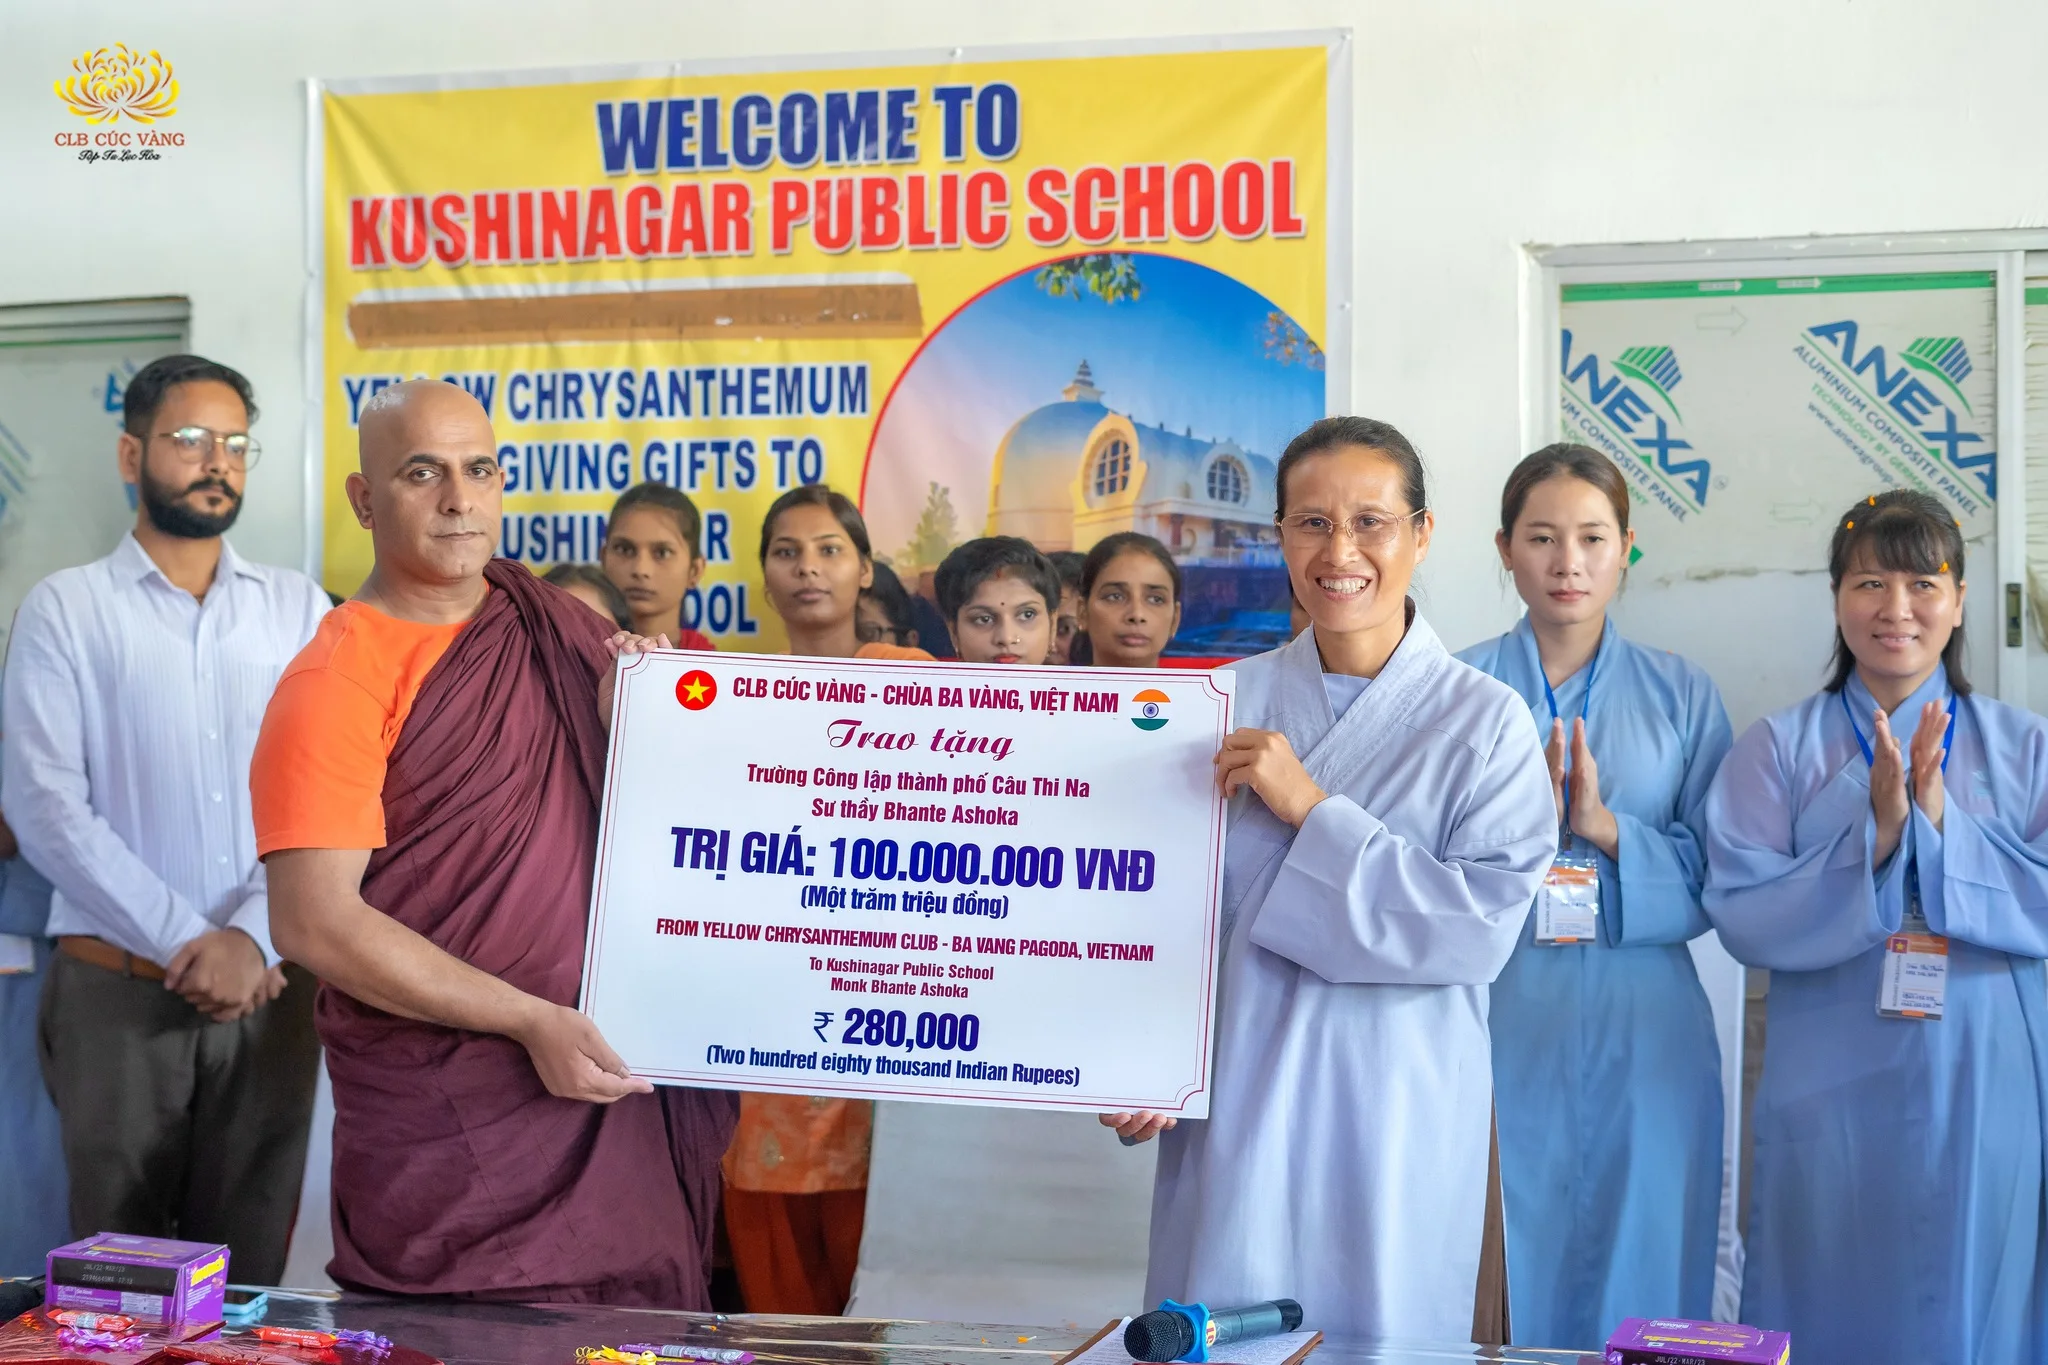 Trao tặng 100 triệu đồng tới Trường Công lập thành phố Câu Thi Na - Nơi các em học sinh được học Phật Pháp